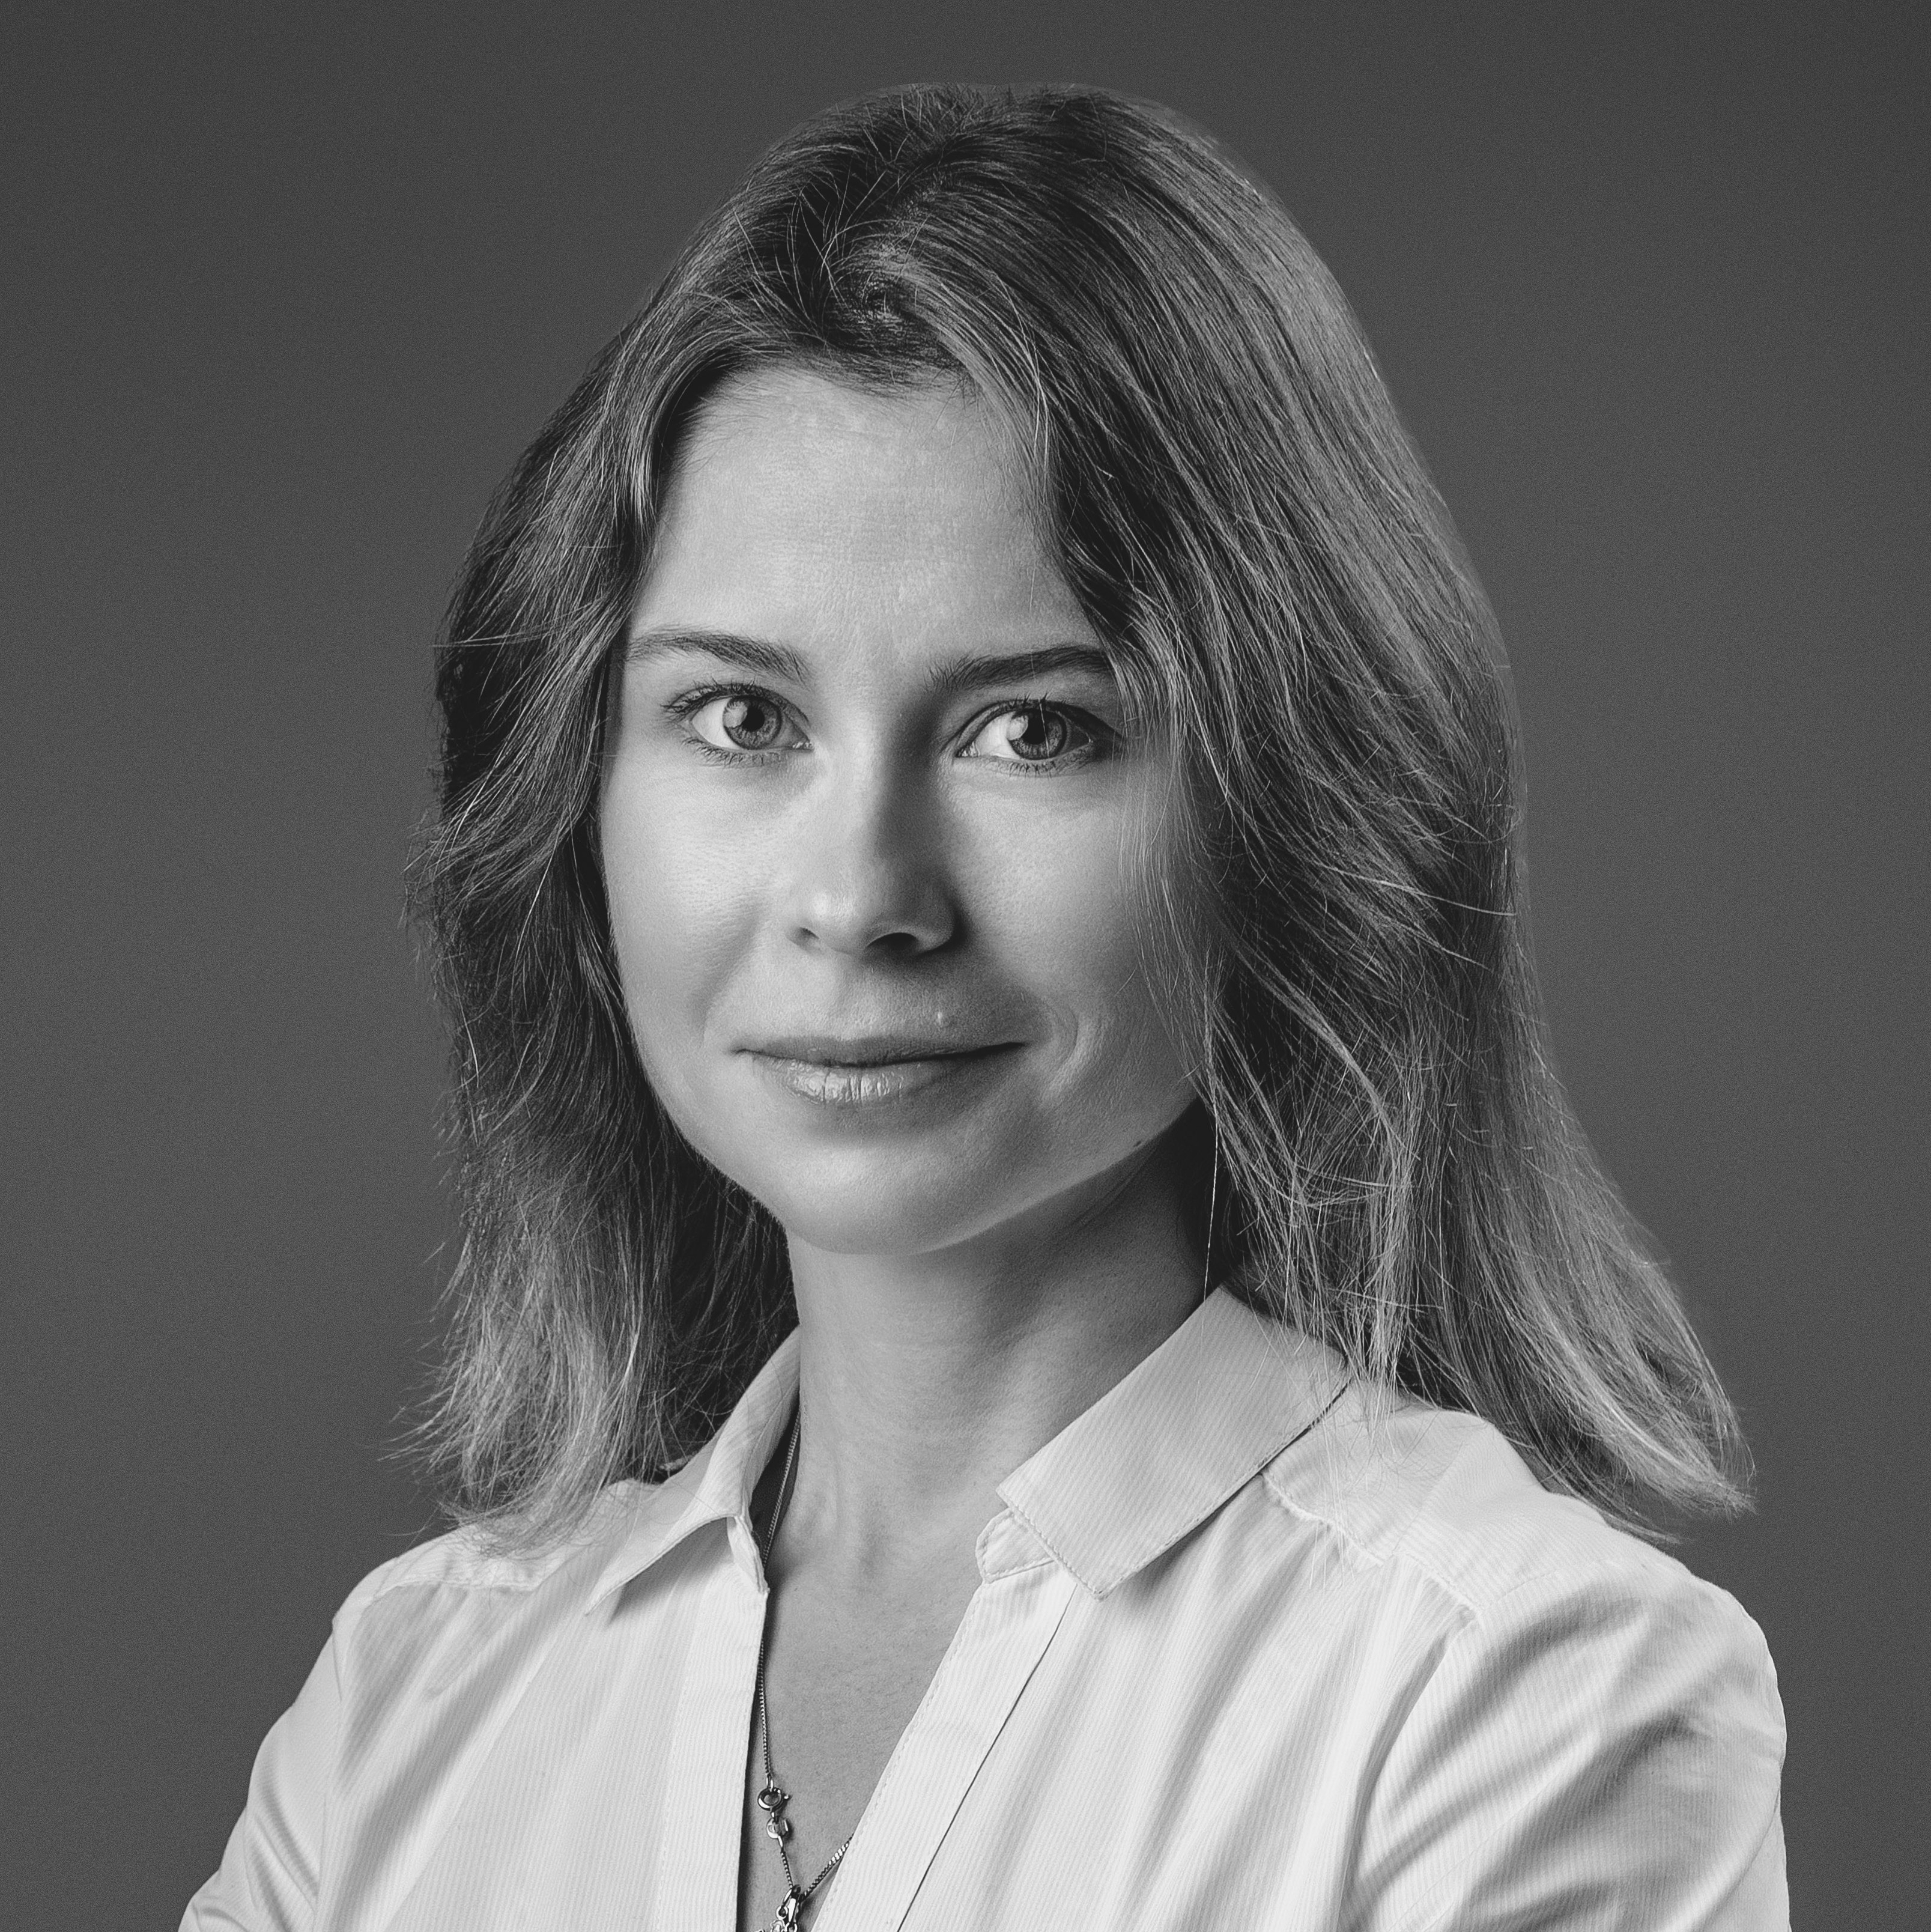 Nadezhda Pchelintseva